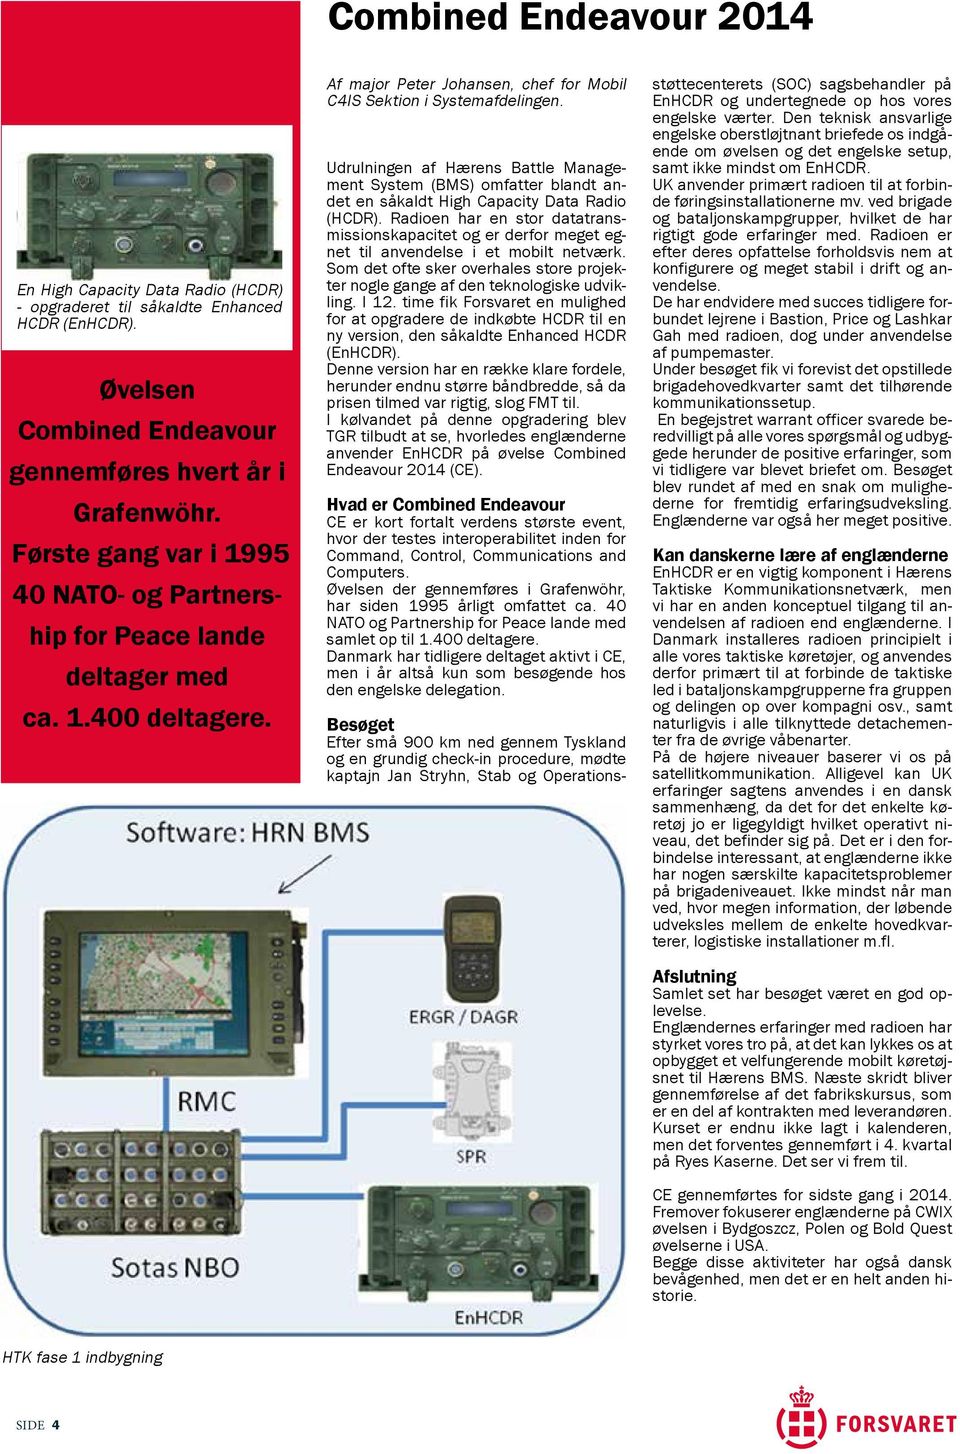 Udrulningen af Hærens Battle Management System (BMS) omfatter blandt andet en såkaldt High Capacity Data Radio (HCDR).